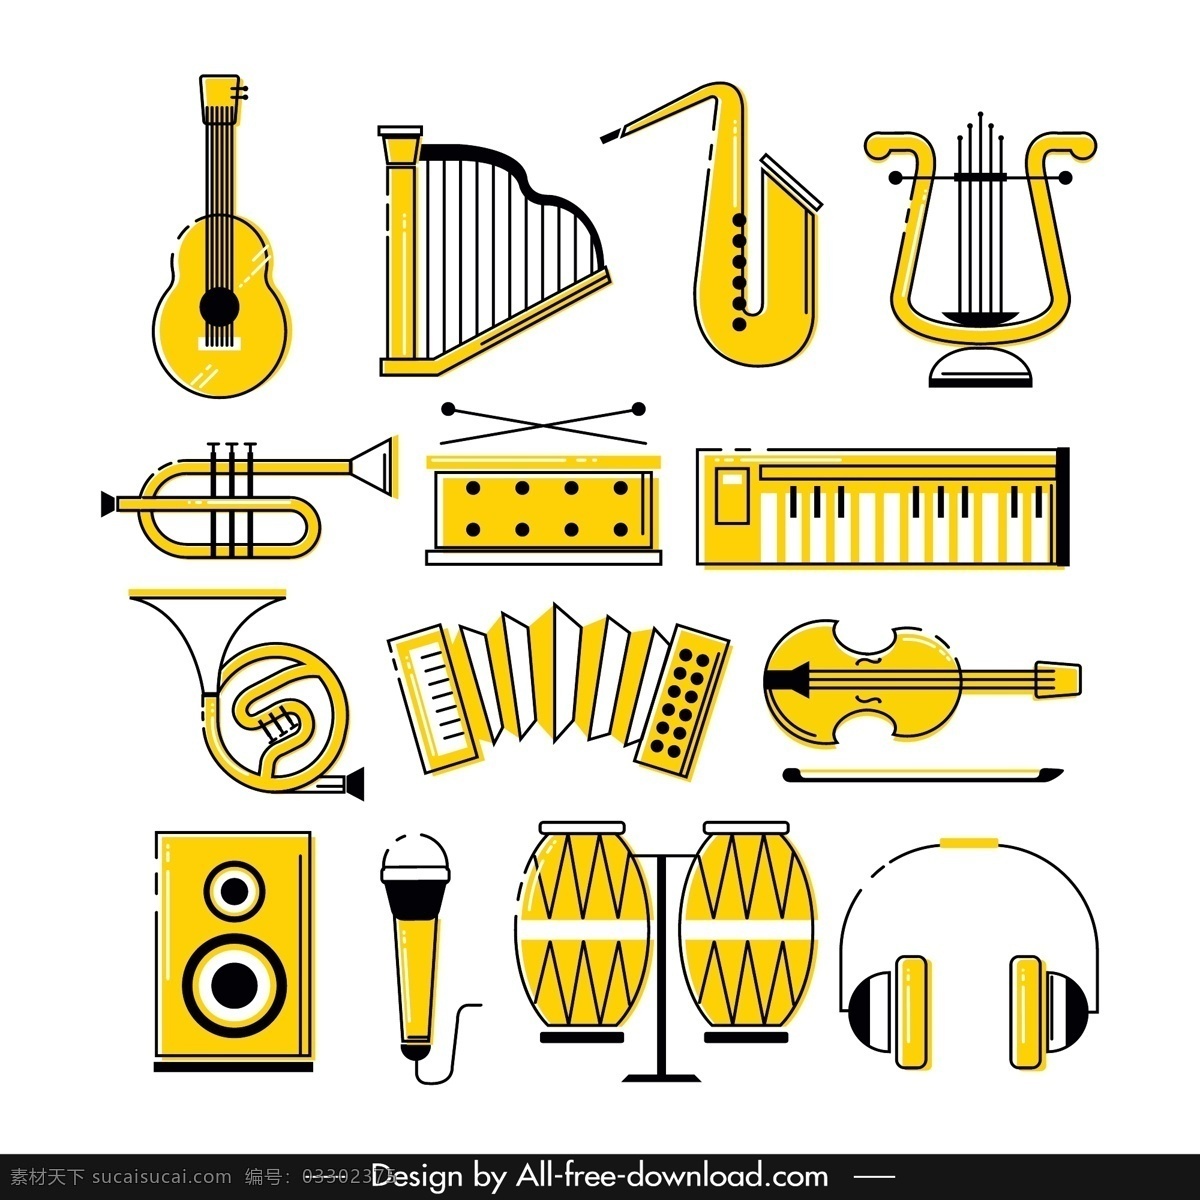 黄色乐器图片 吉他 竖琴 琵琶 萨克斯 小号 矢量 高清图片